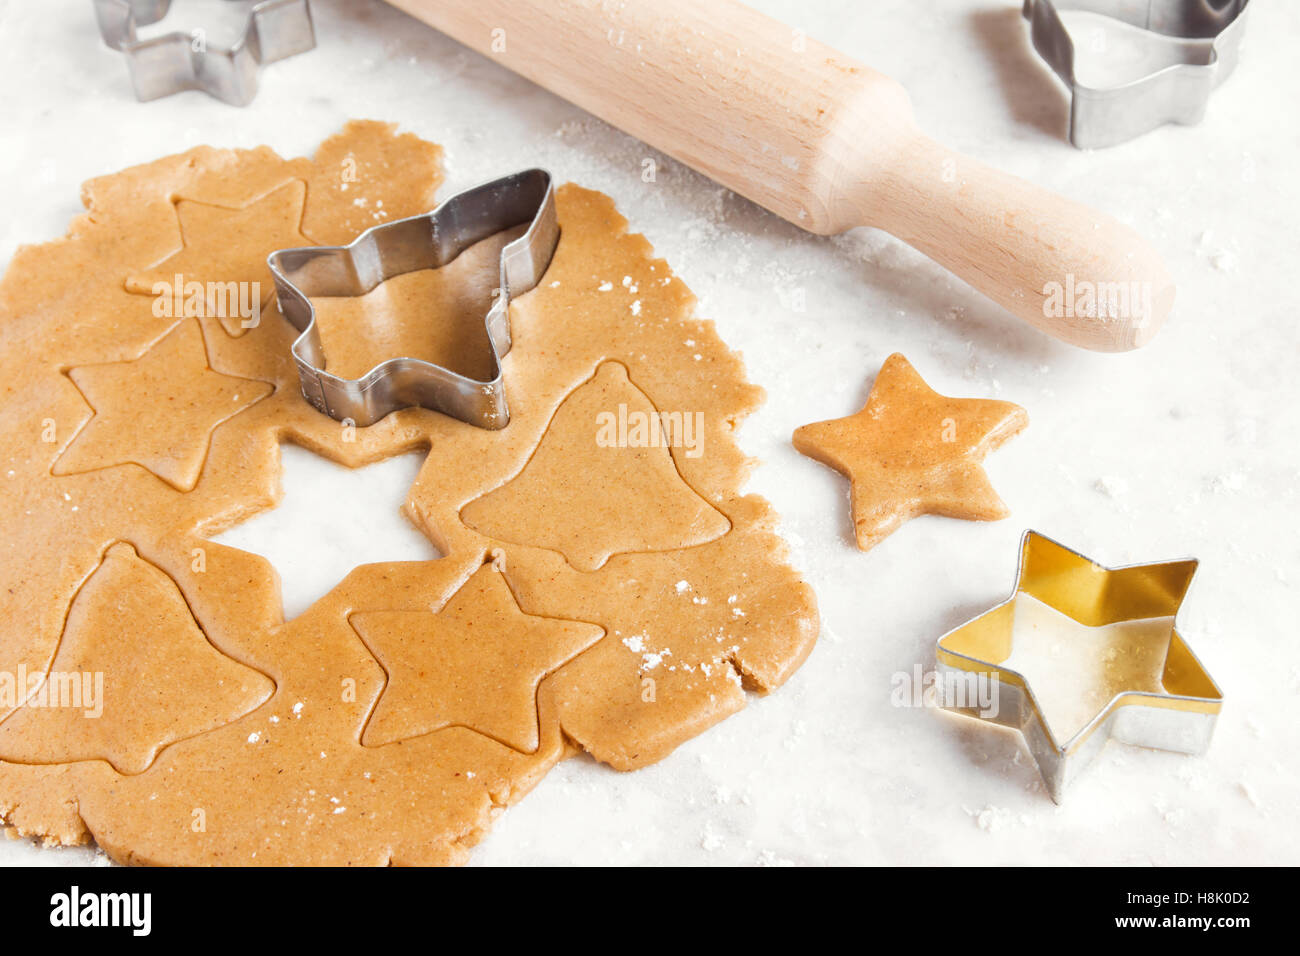 Vorbereitung Weihnachten Lebkuchen Baum mit Cutter, Teig und Nudelholz - festliche hausgemachte Weihnachtsbäckerei Stockfoto